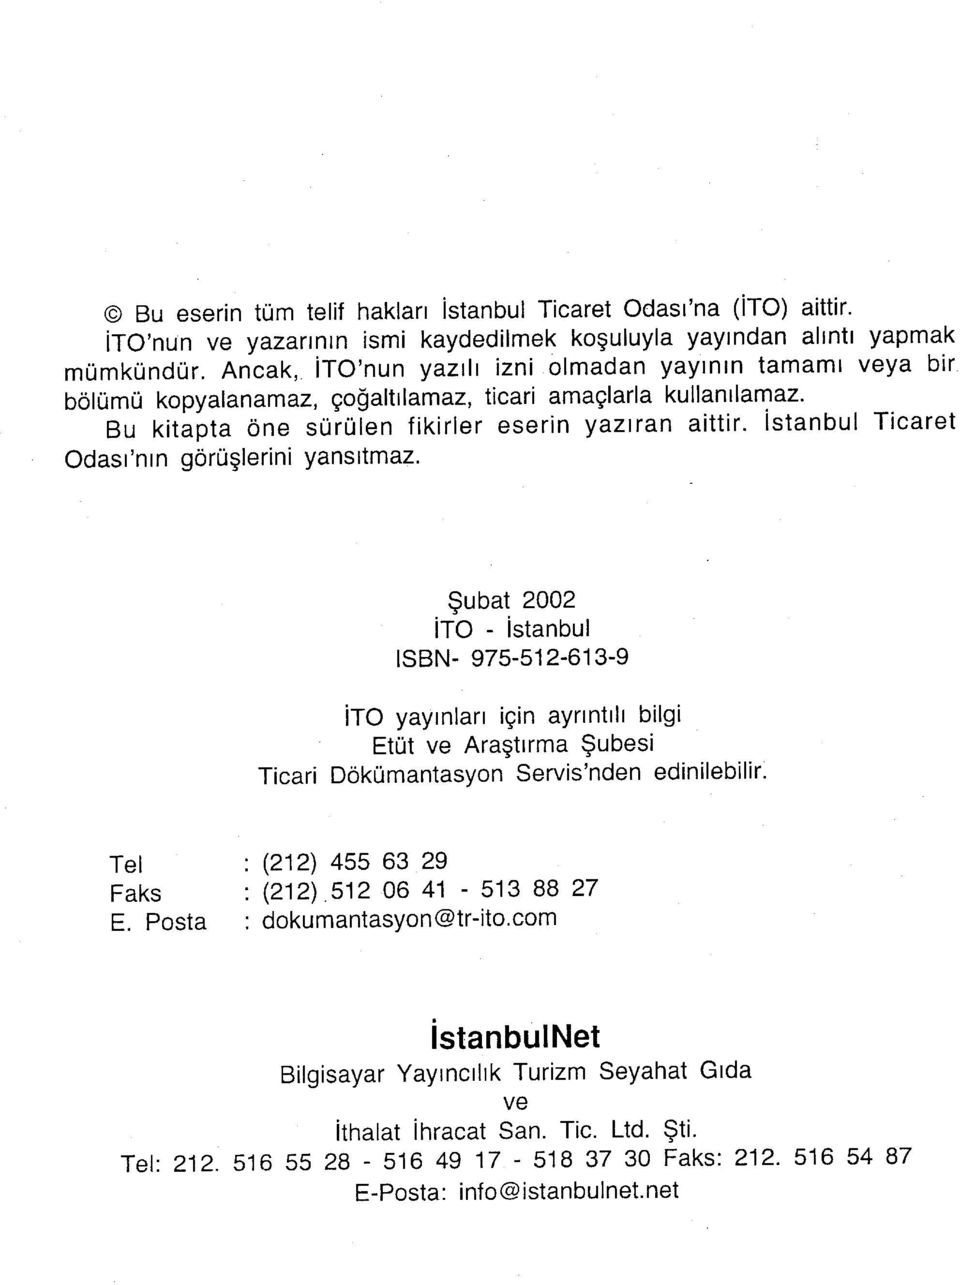 İstanbul Ticaret Odası'nm görüşlerini yansıtmaz. Şubat 2002 İTO - İstanbul ISBN- 975-512-613-9 İTO yayınları için aynntılı bilgi Etüt ve Araştırma Şubesi Ticari Dokümantasyon Servis'nden edinilebilir.